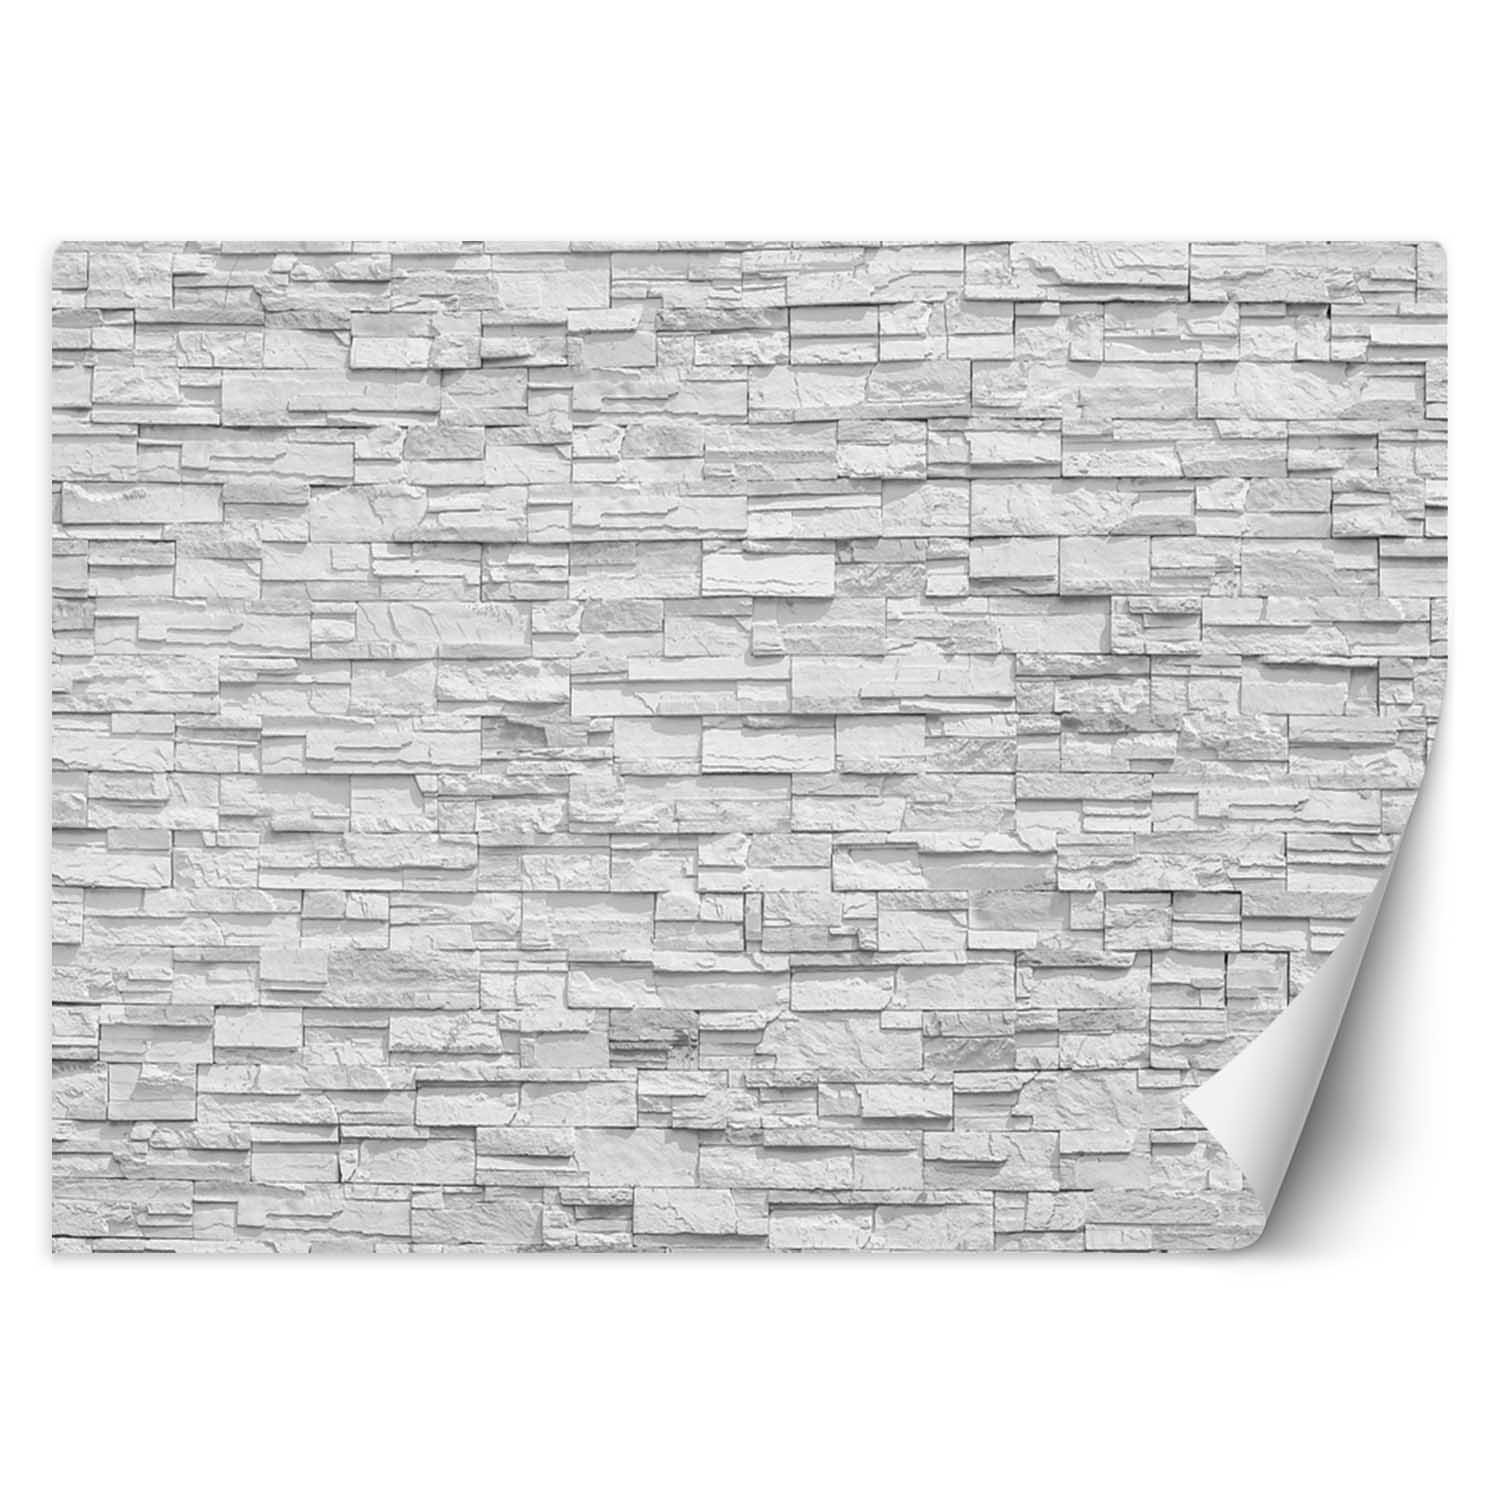 Trend24 – Behang – Witte Stenen Muur – Vliesbehang – Behang Woonkamer – Fotobehang – 450x315x2 cm – Incl. behanglijm